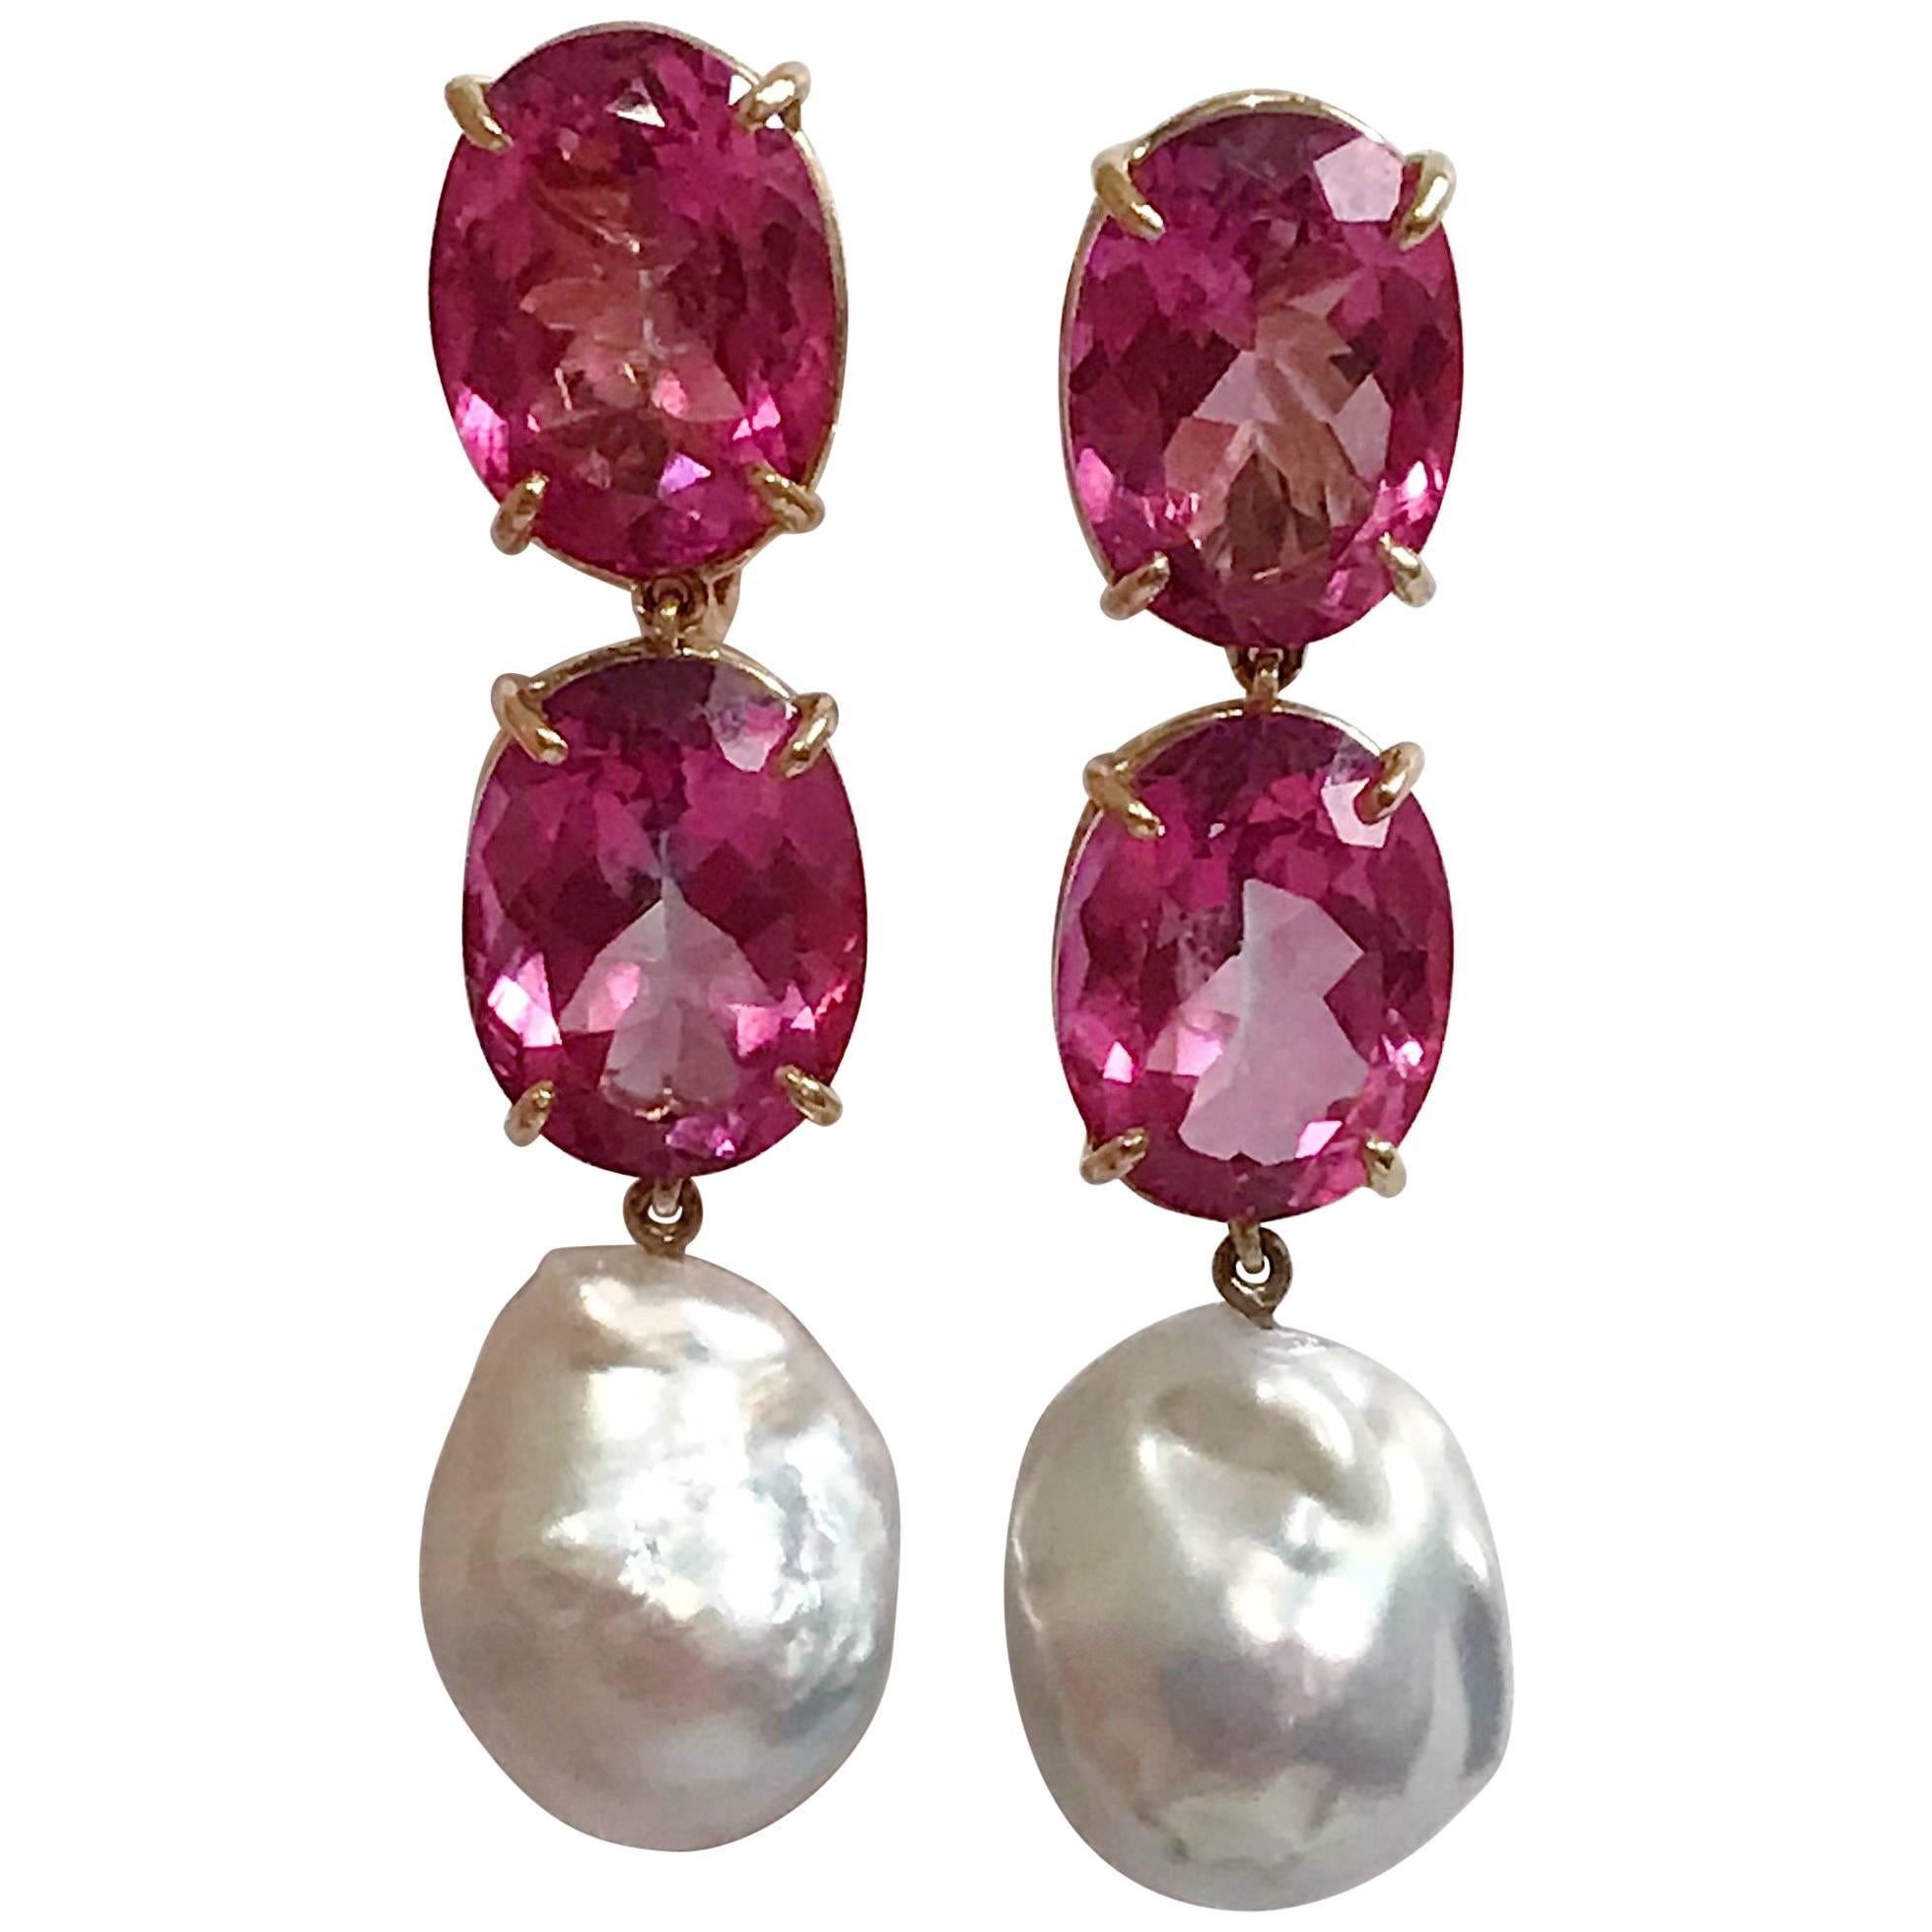 Crystal Pear Droplet Earrings Light Rose & Light Topaz Gems